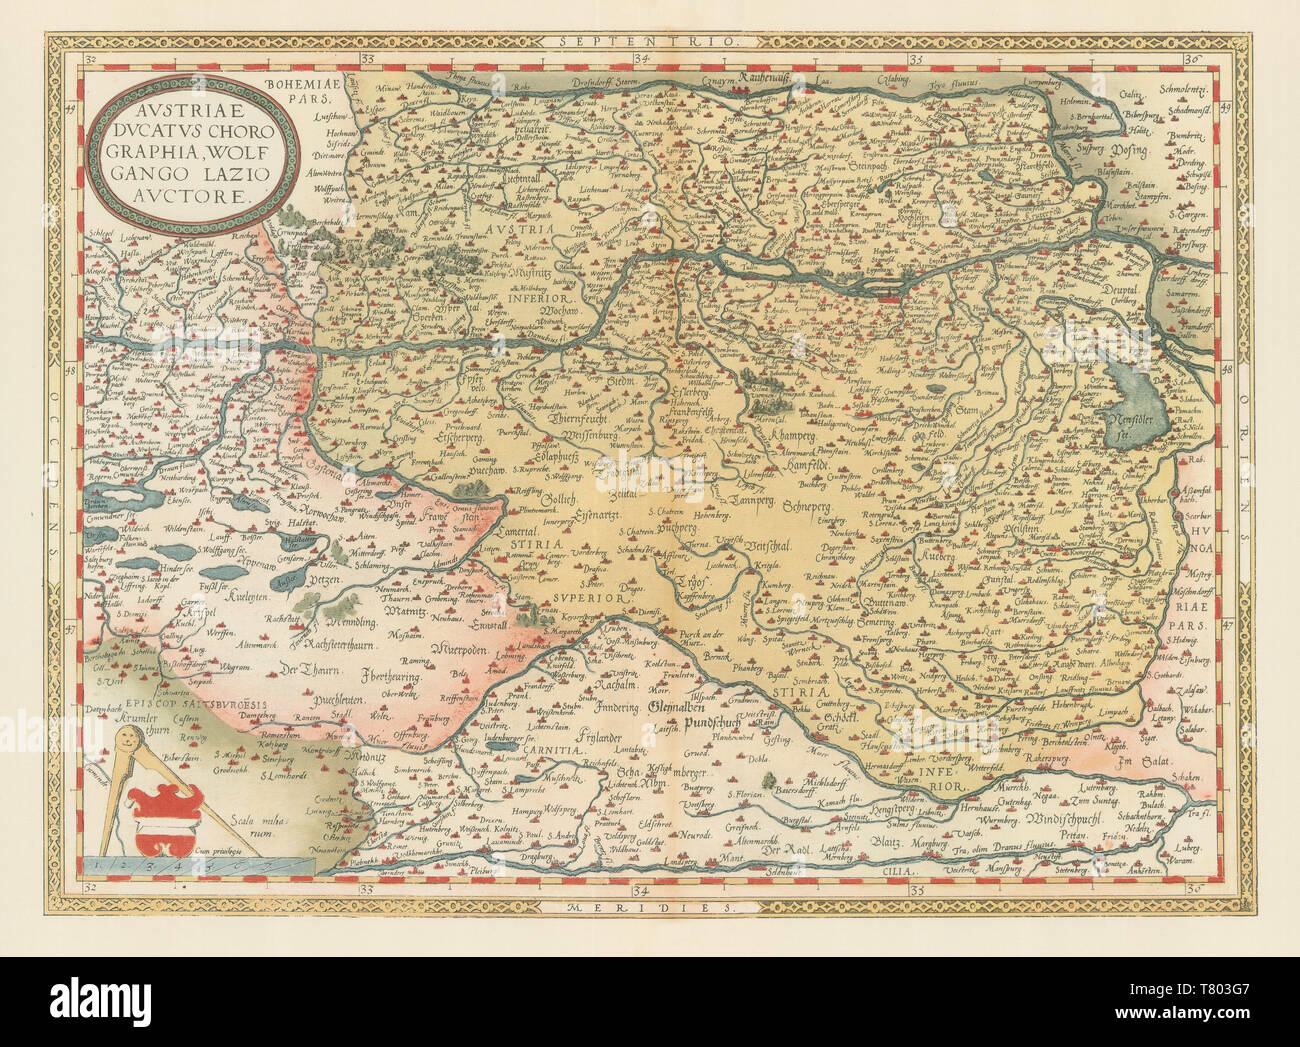 Theatrum Orbis Terrarum, Austria, 1570 Stock Photo